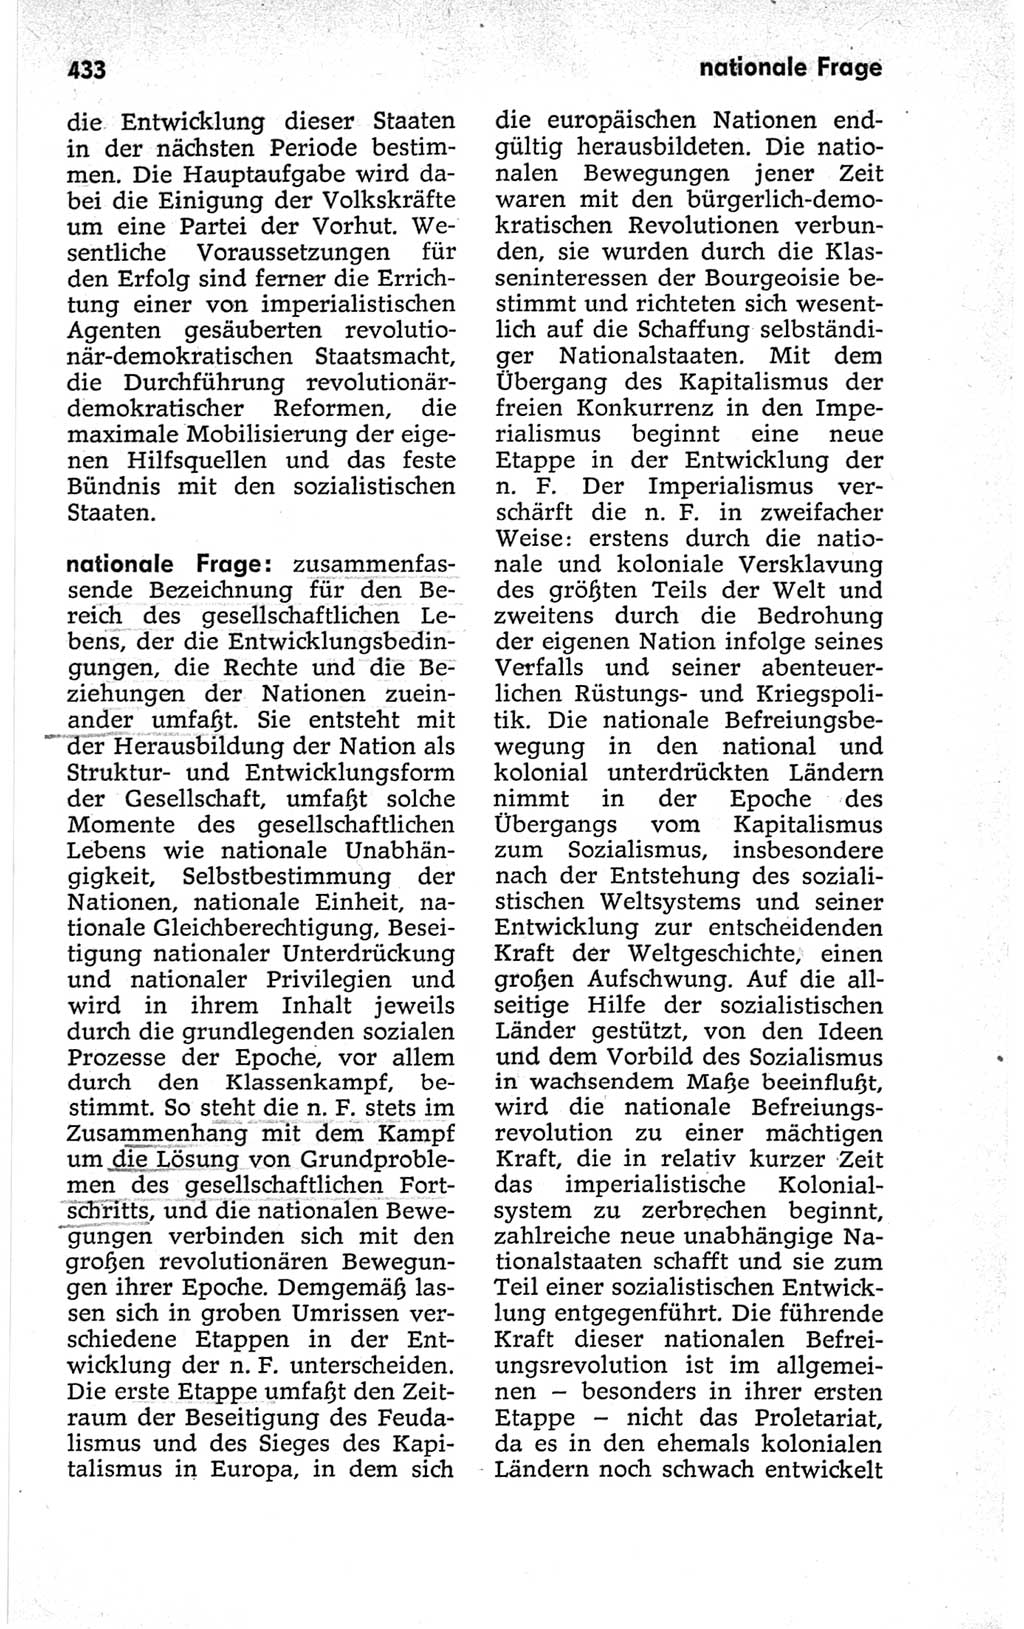 Kleines politisches Wörterbuch [Deutsche Demokratische Republik (DDR)] 1967, Seite 433 (Kl. pol. Wb. DDR 1967, S. 433)